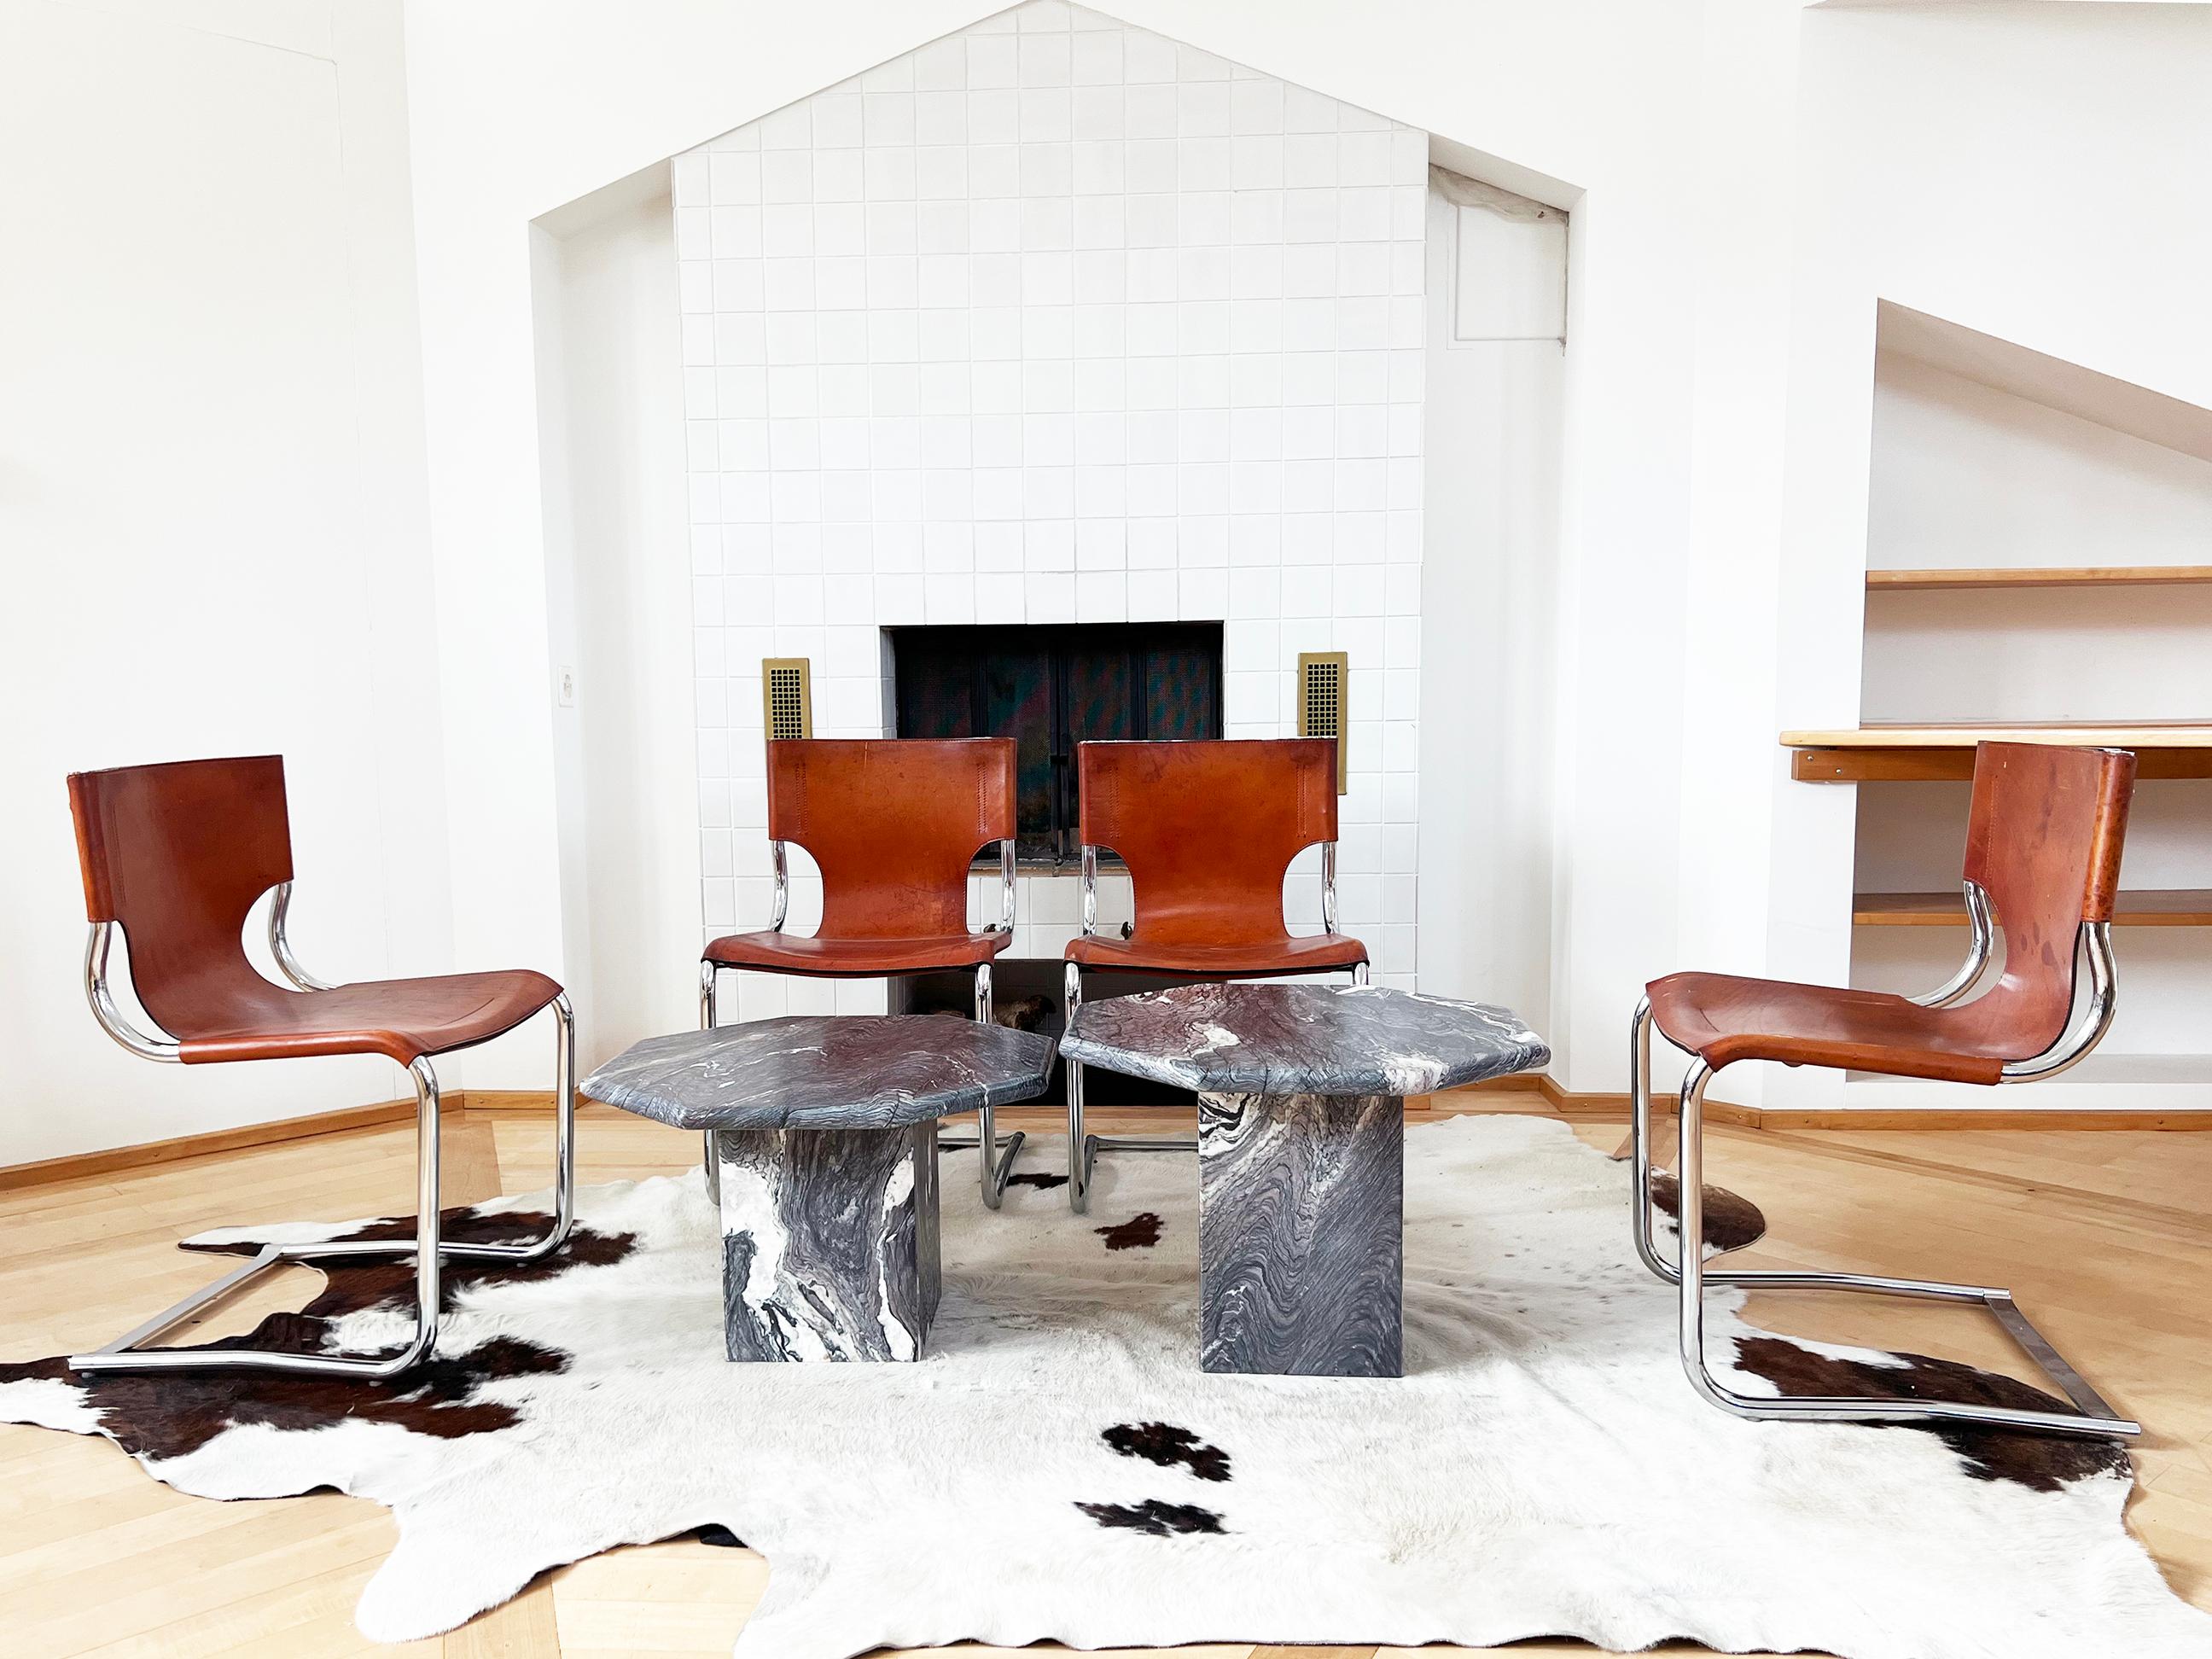 Absolument magnifique paire de tables gigognes en marbre des années 1970, dans un état fantastique et pratiquement inutilisé. 
Elles présentent chacune un plateau de table de forme octogonale et un socle cubique quadrillé.
La partie supérieure se